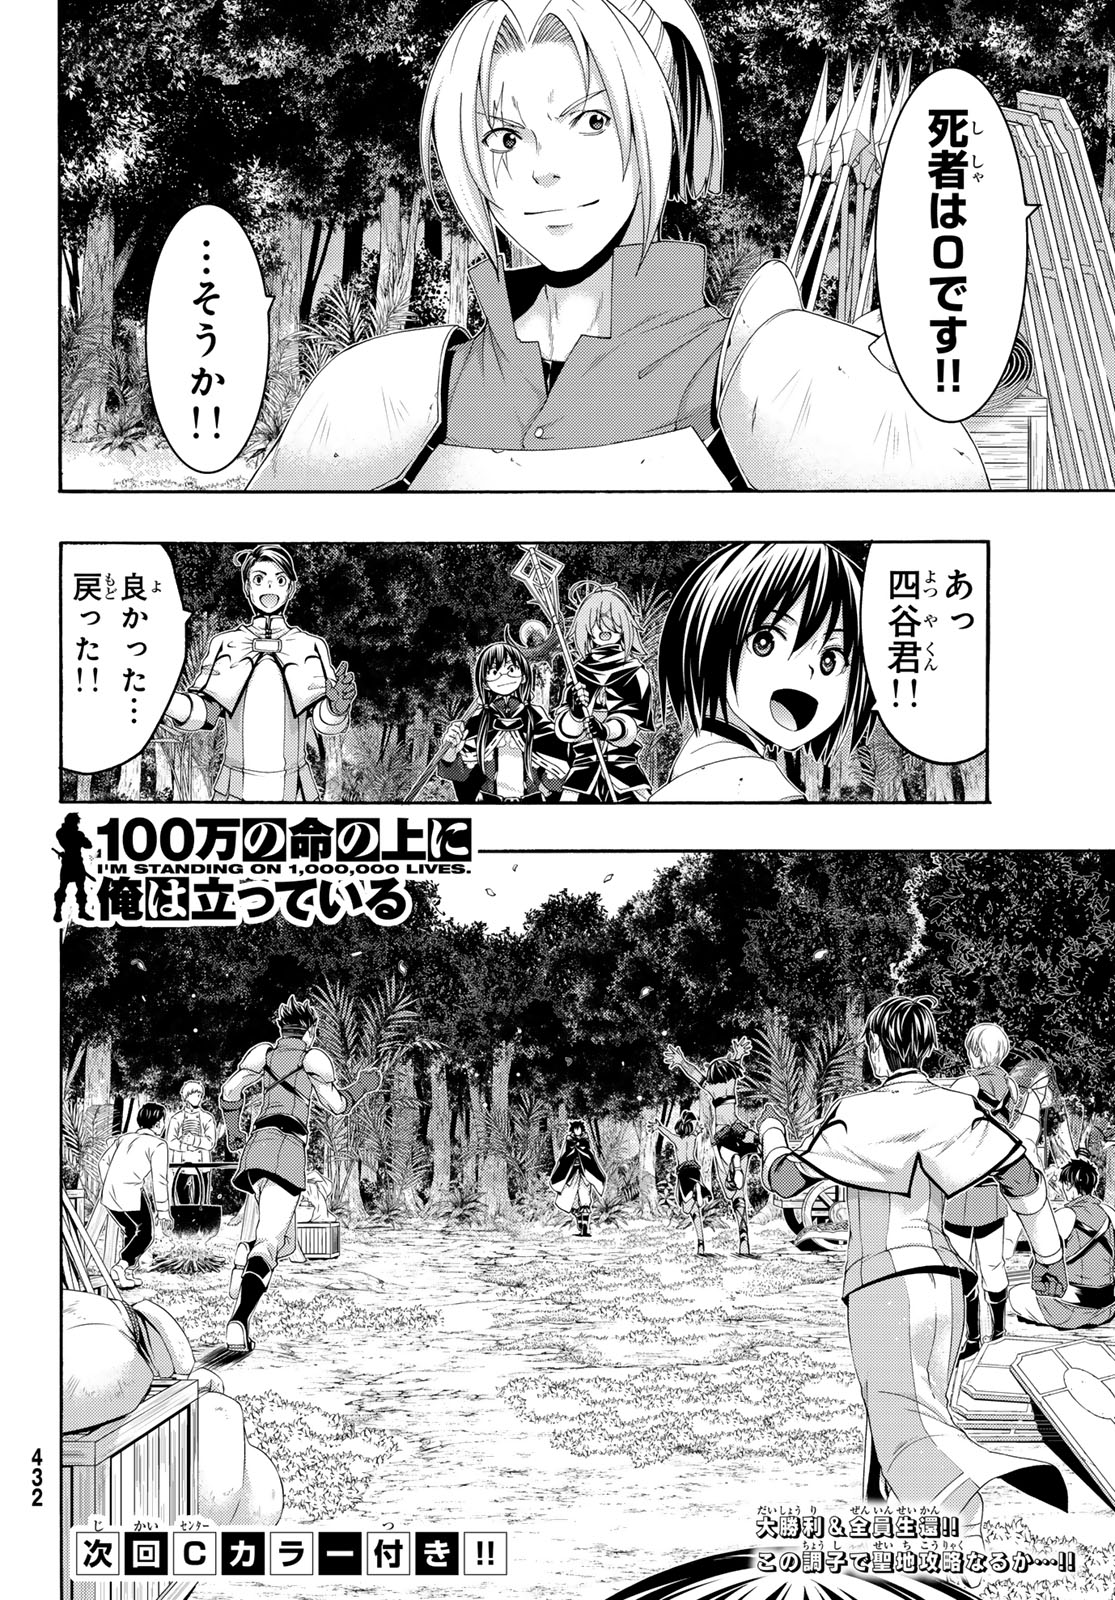 100-man no Inochi no Ue ni Ore wa Tatte Iru - Chapter 95 - Page 36